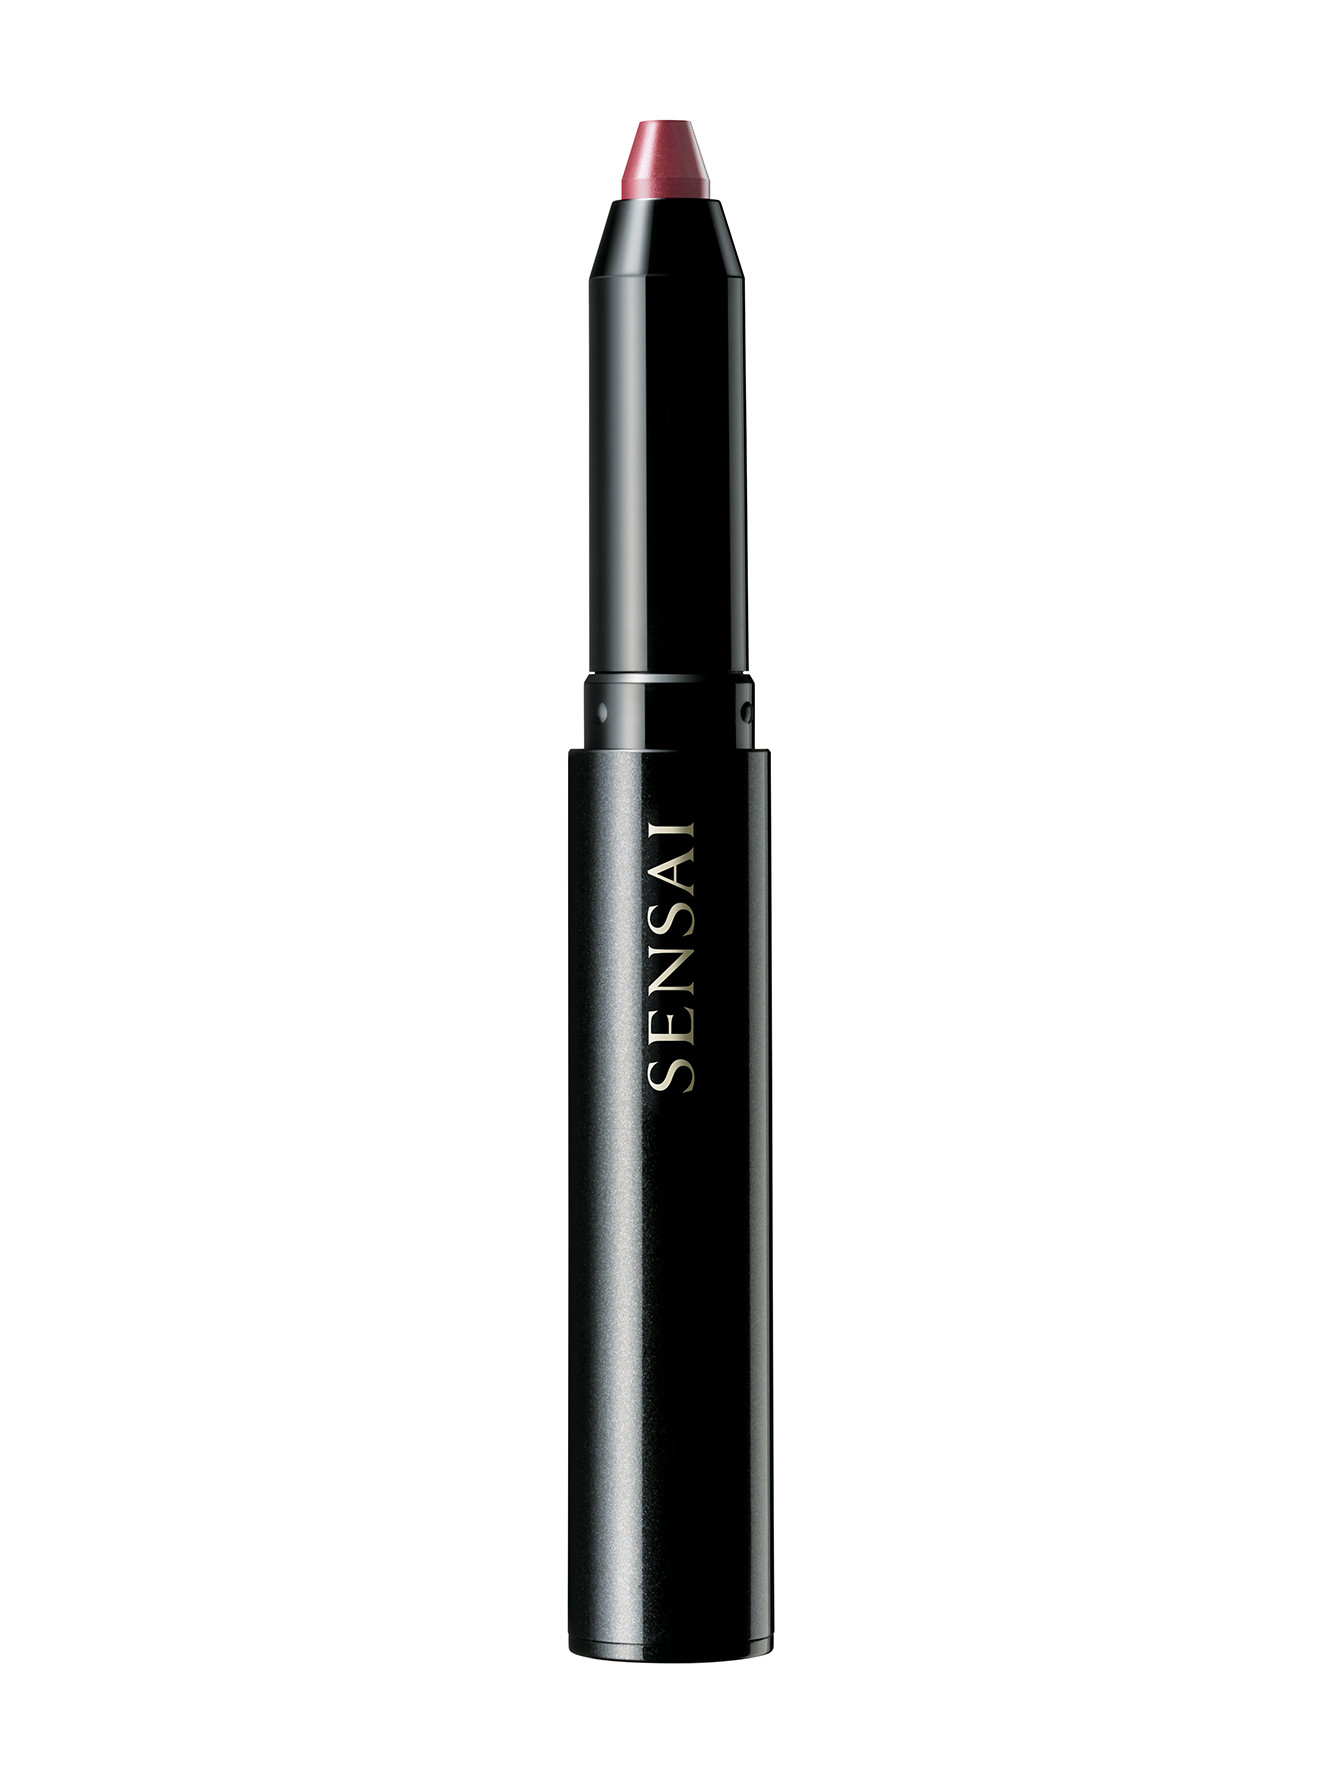 Помада-карандаш для губ - №04, Sensai Silky Design - Общий вид